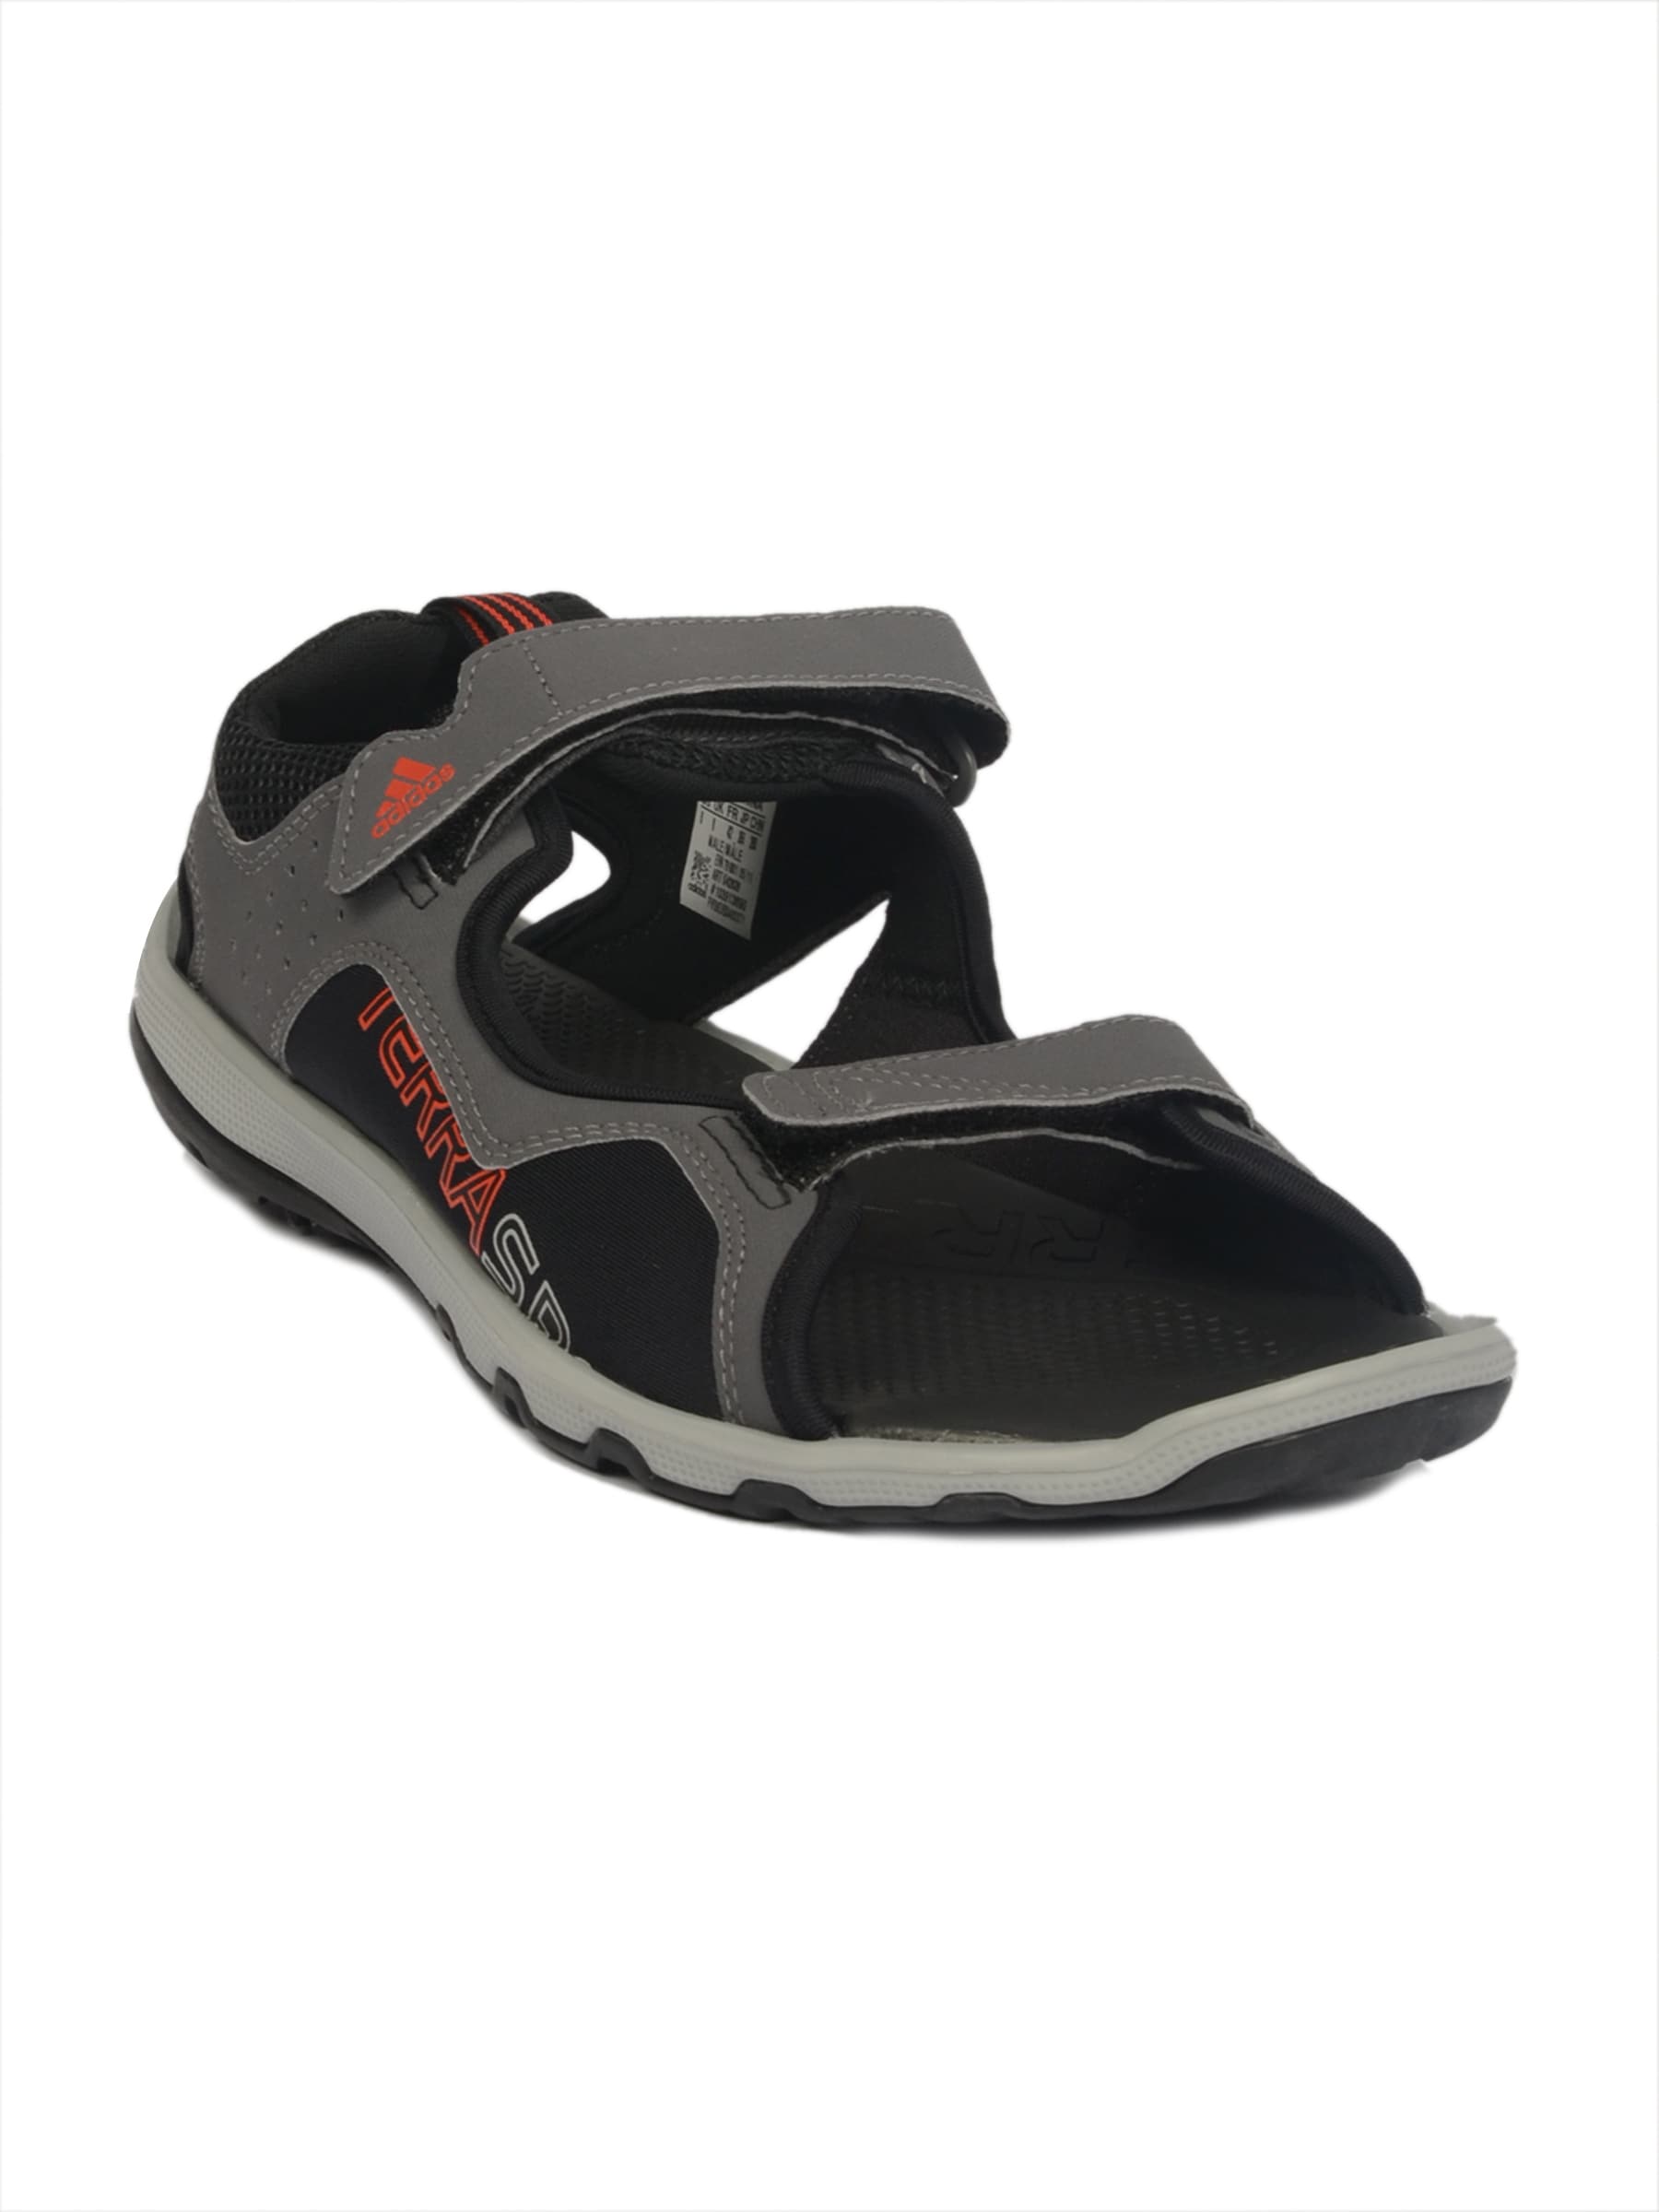 ADIDAS Men Terra Sports Syn Grey Sandals